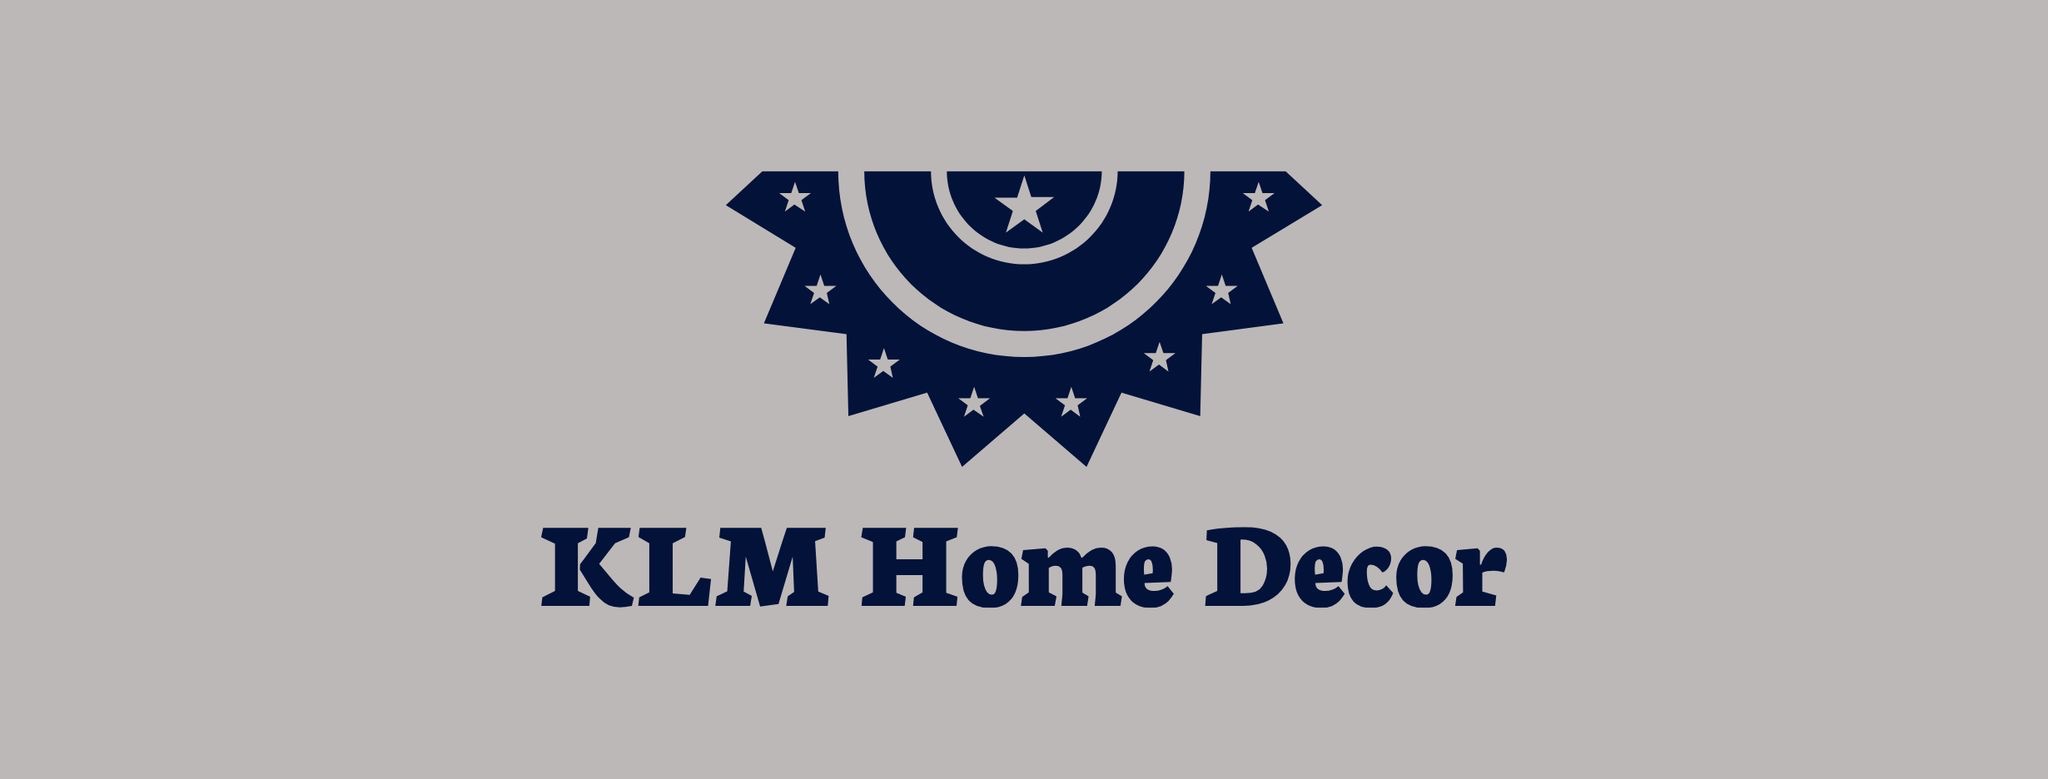 KLM Home Decor